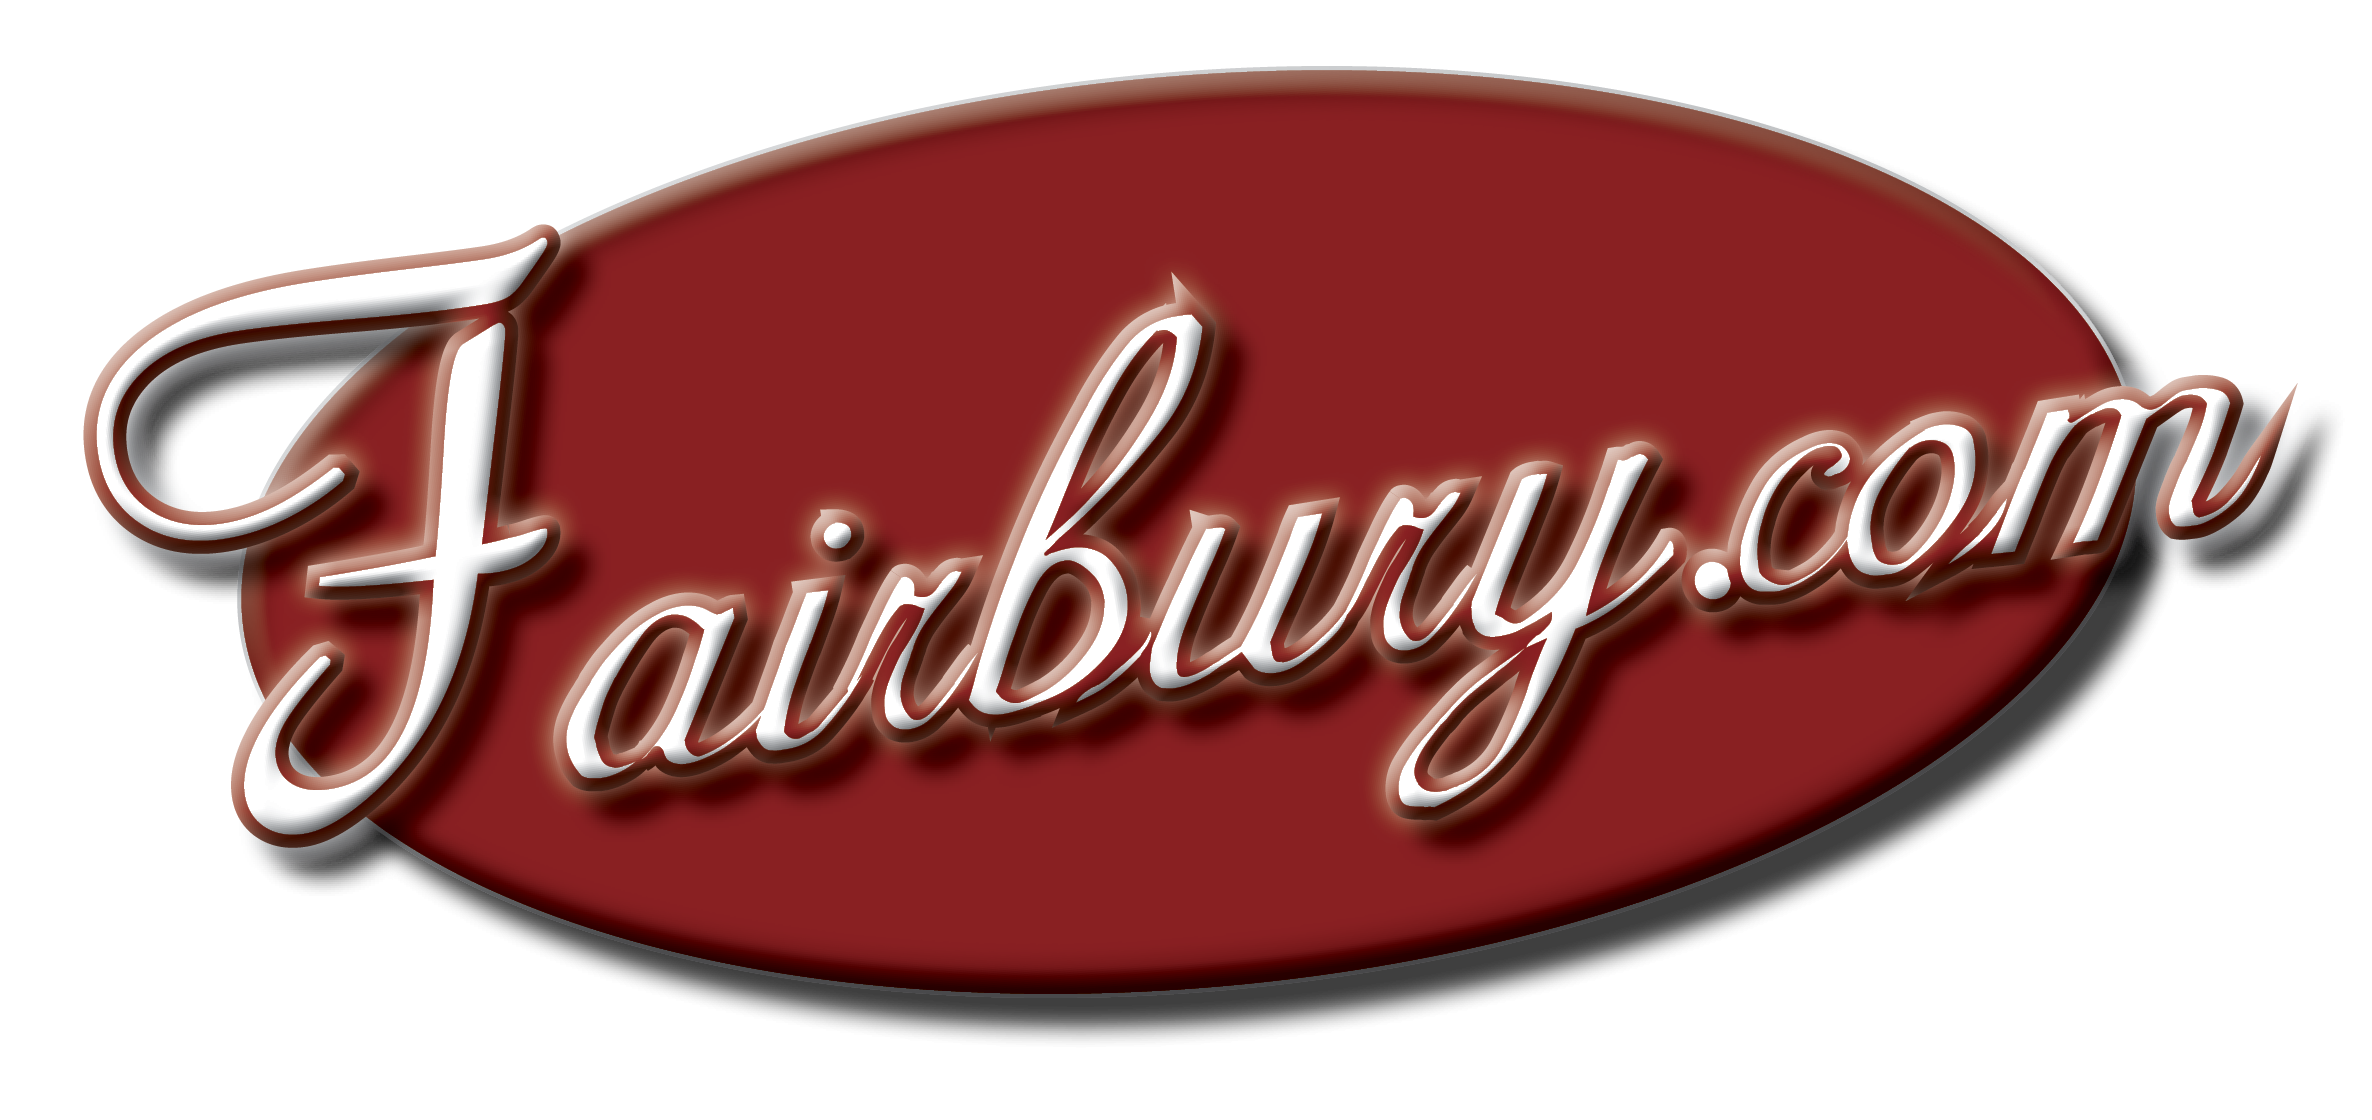 Fairbury.com